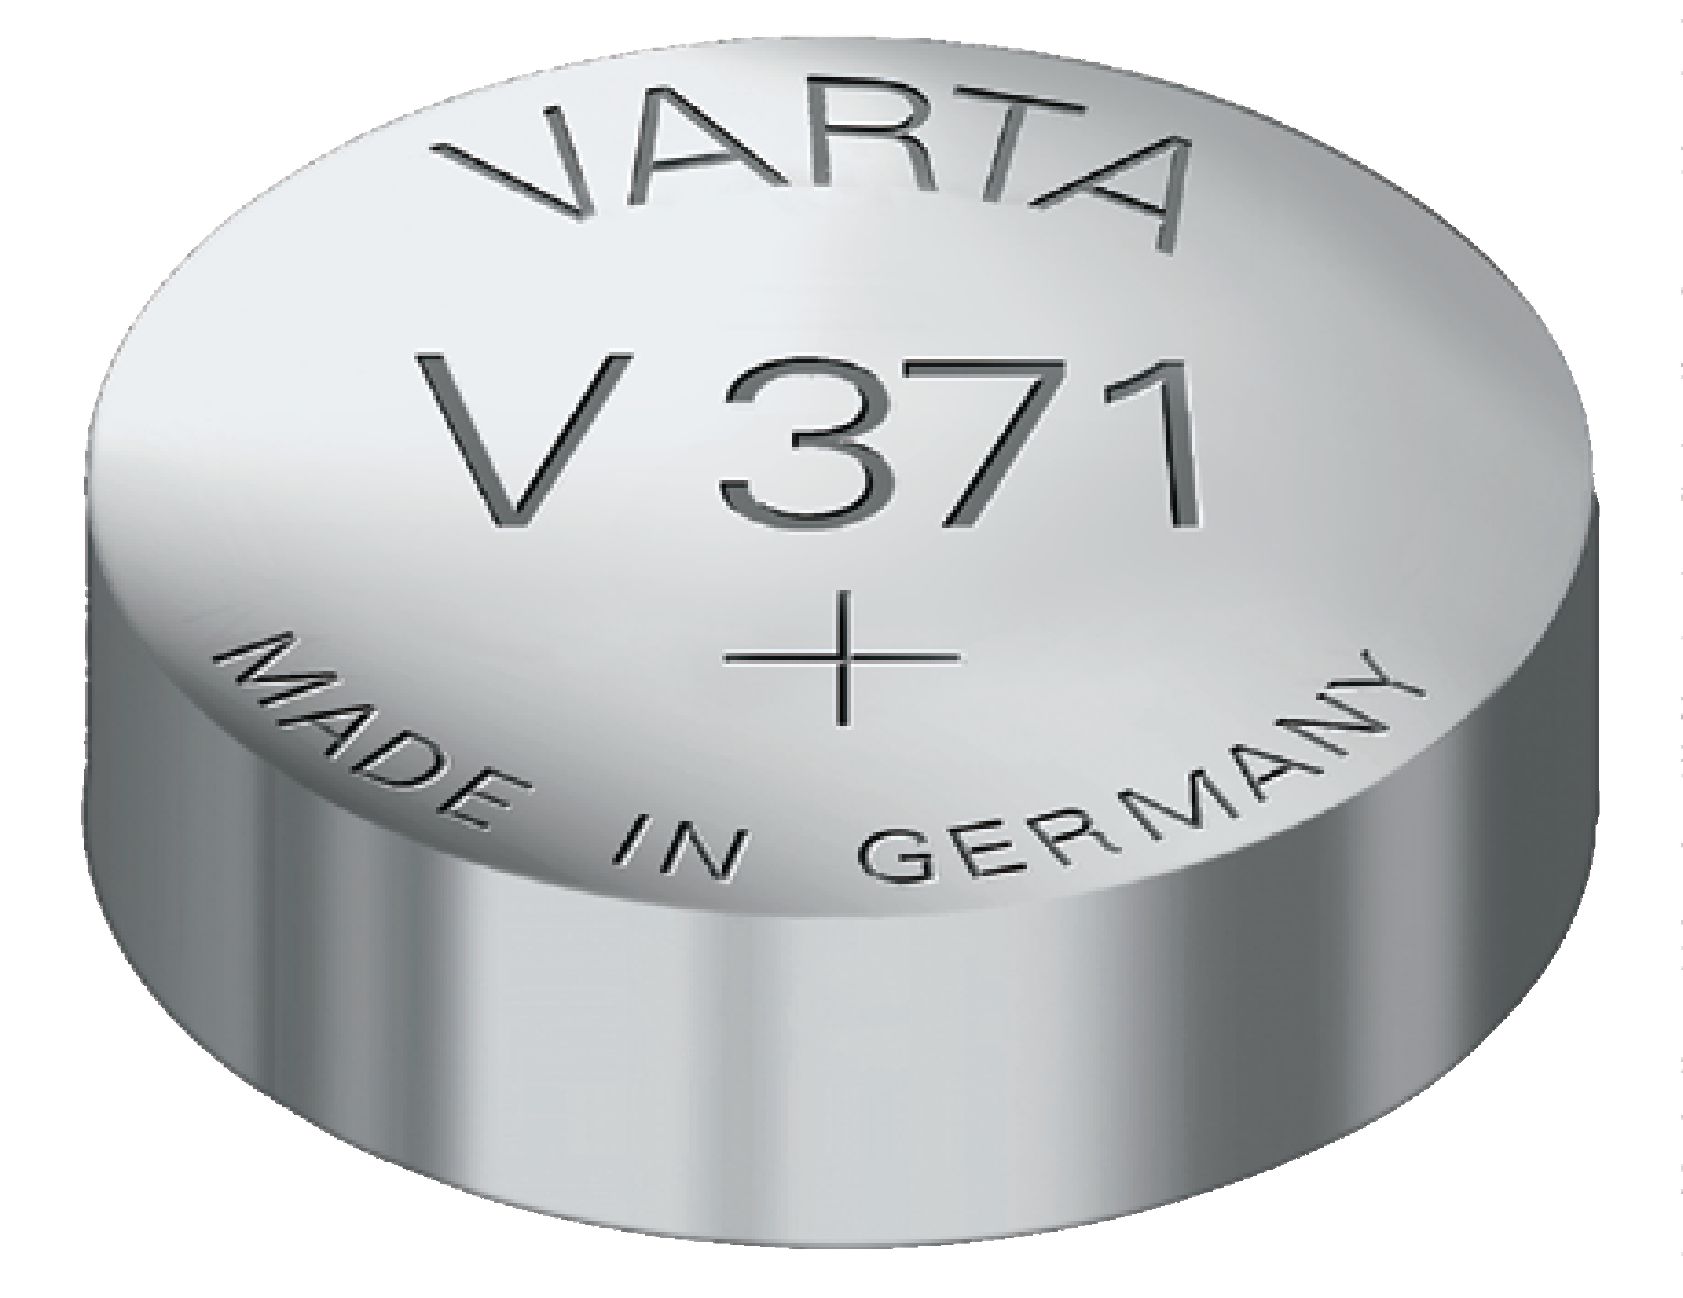 Stříbro-oxidová hodinková baterie SR69/V371 1.55 V 44 mAh, VARTA-V371